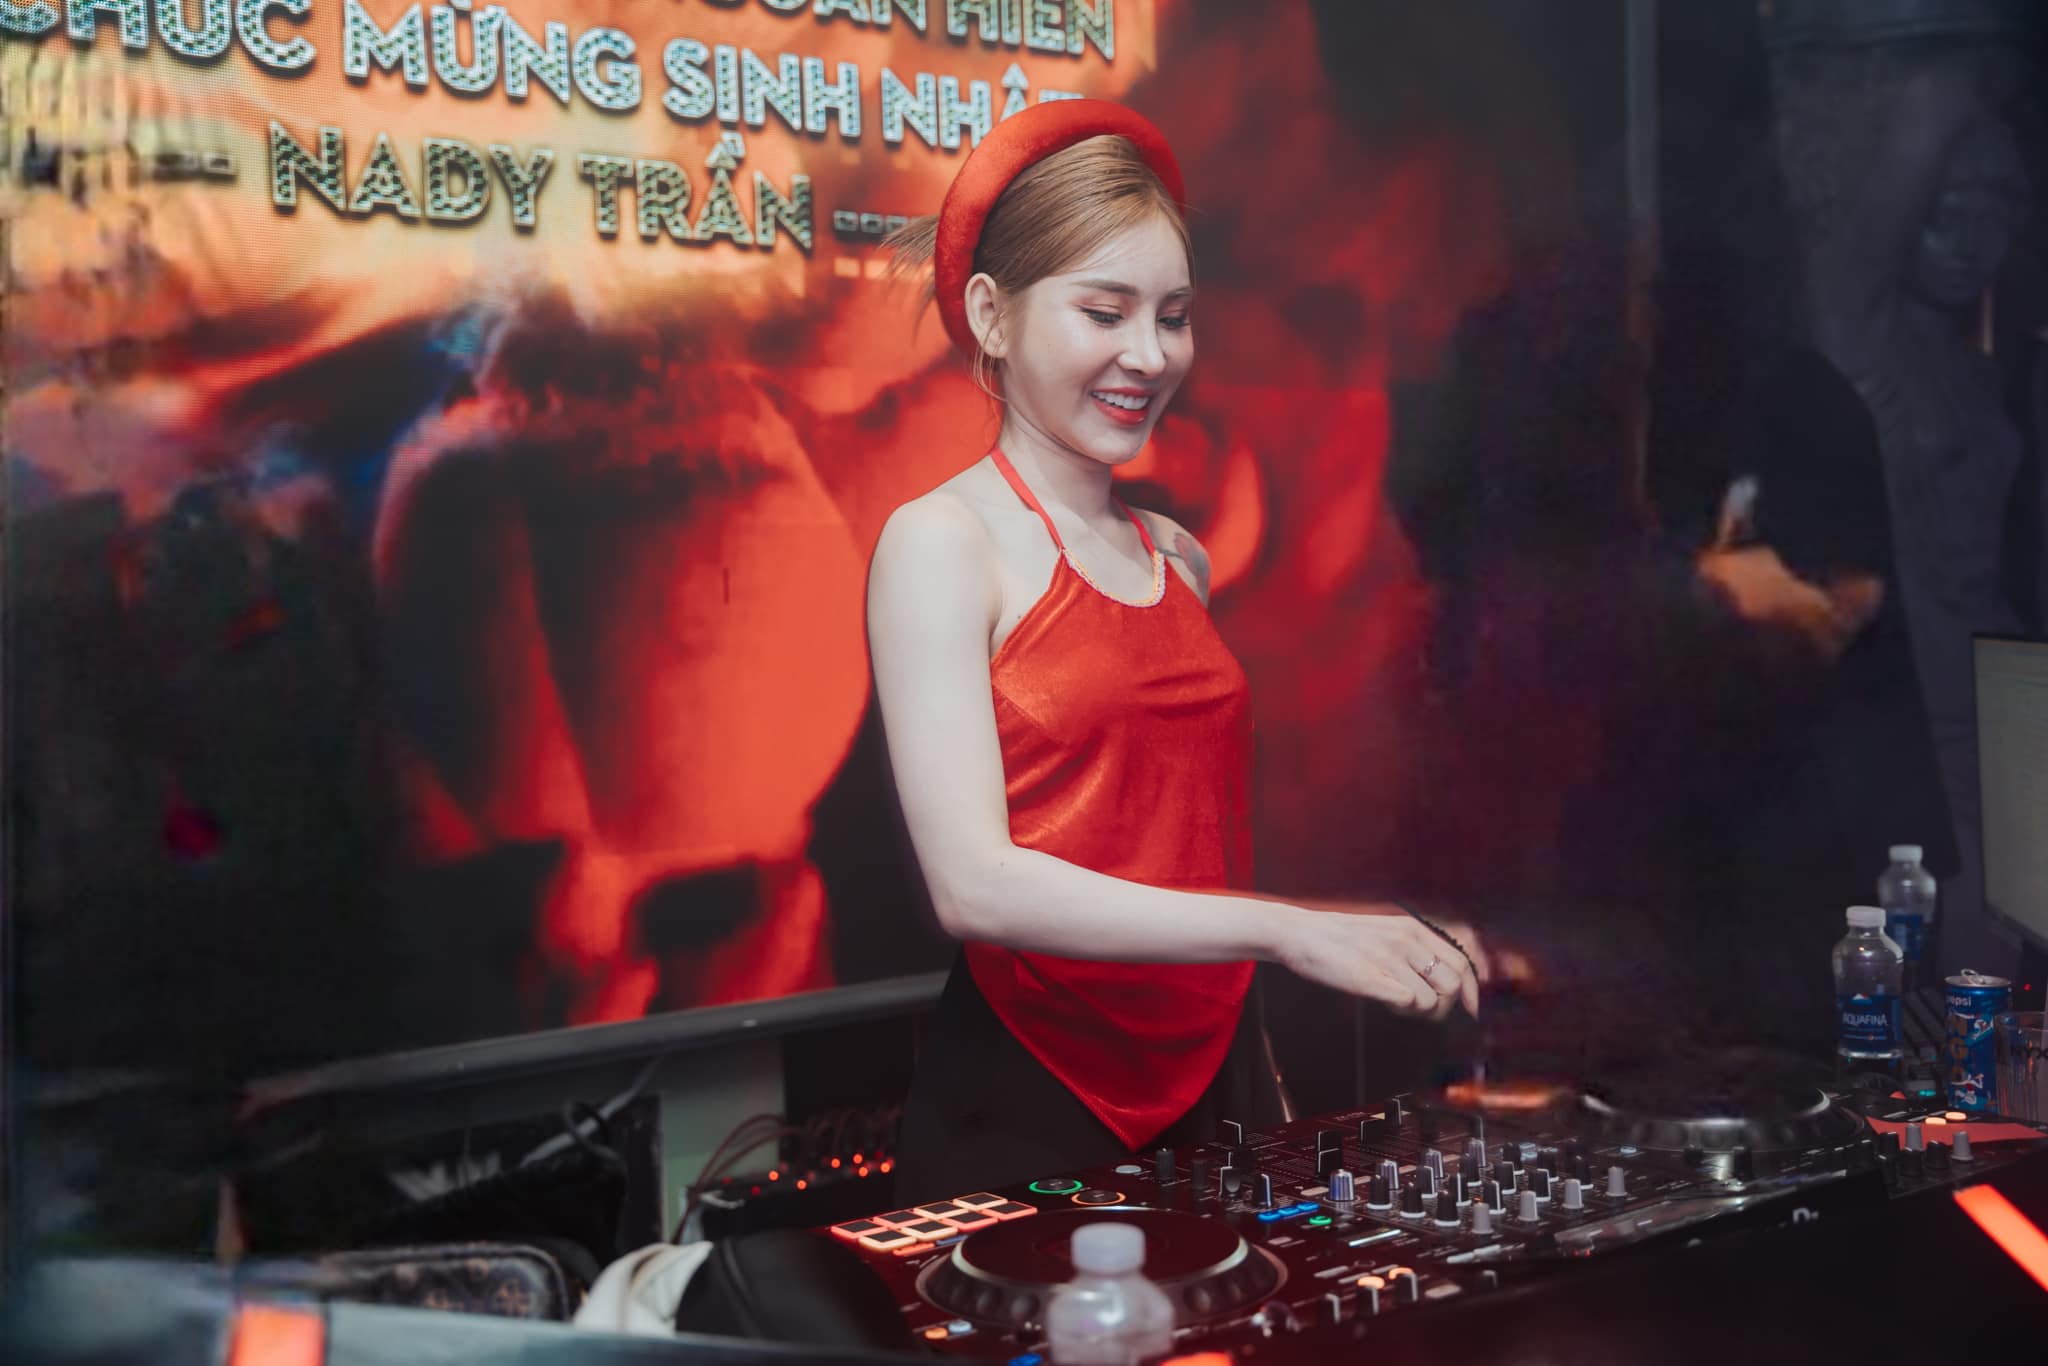 Nữ DJ miền Tây mặc áo dài biểu diễn trước 10 nghìn người ở Lào gây 